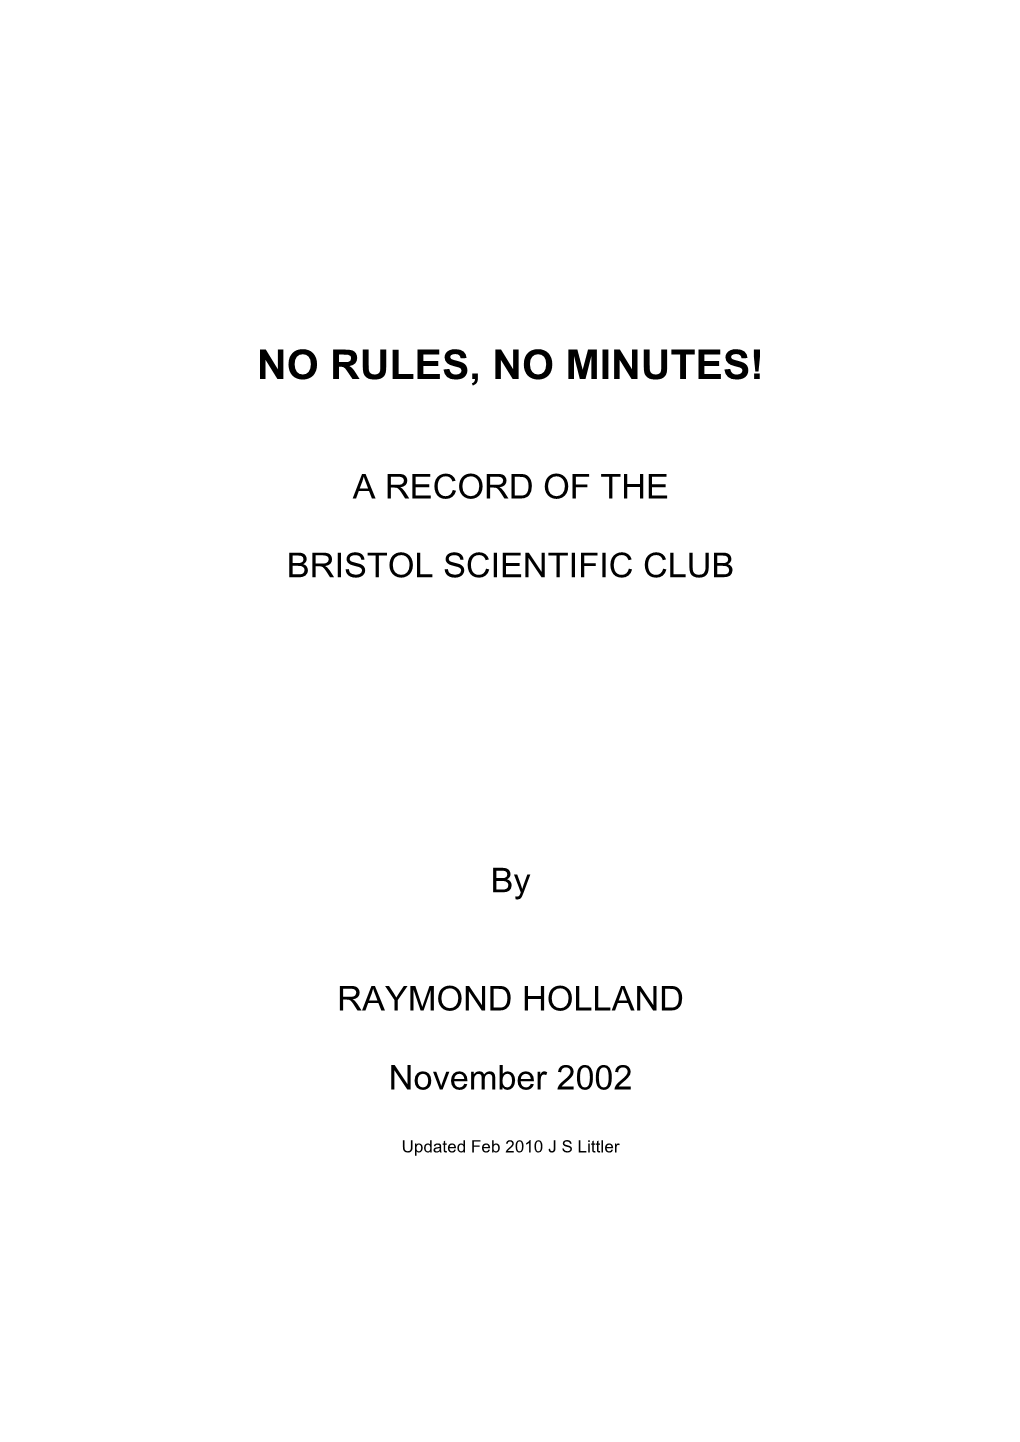 No Rules, No Minutes!